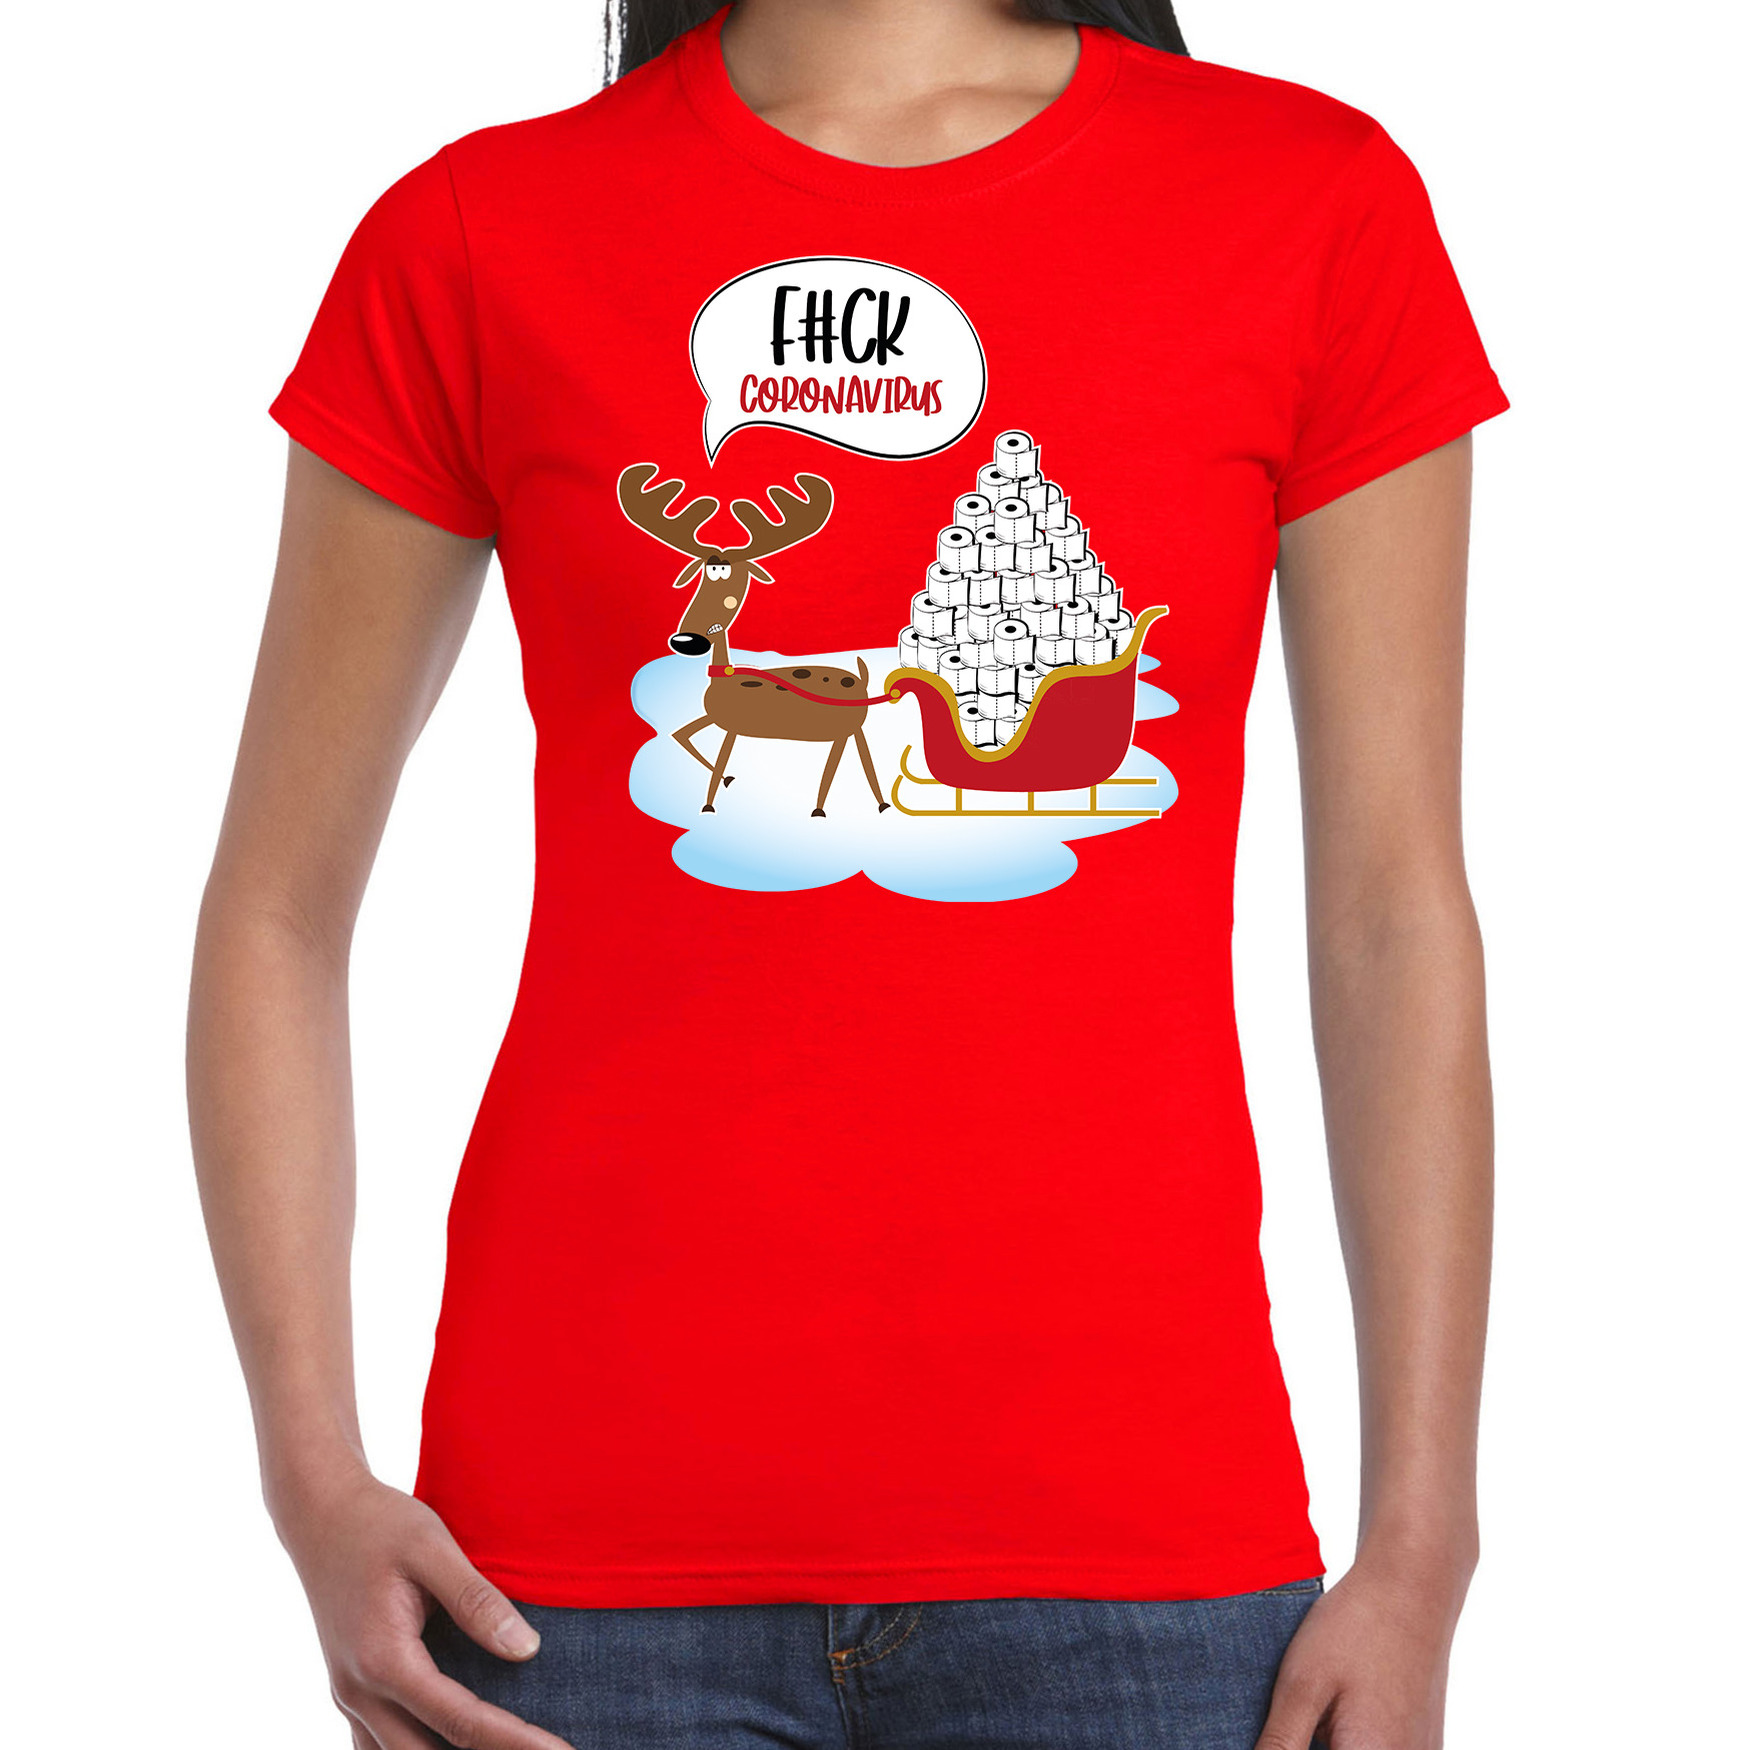 Rood Kerstshirt-Kerstkleding F#ck coronavirus voor dames